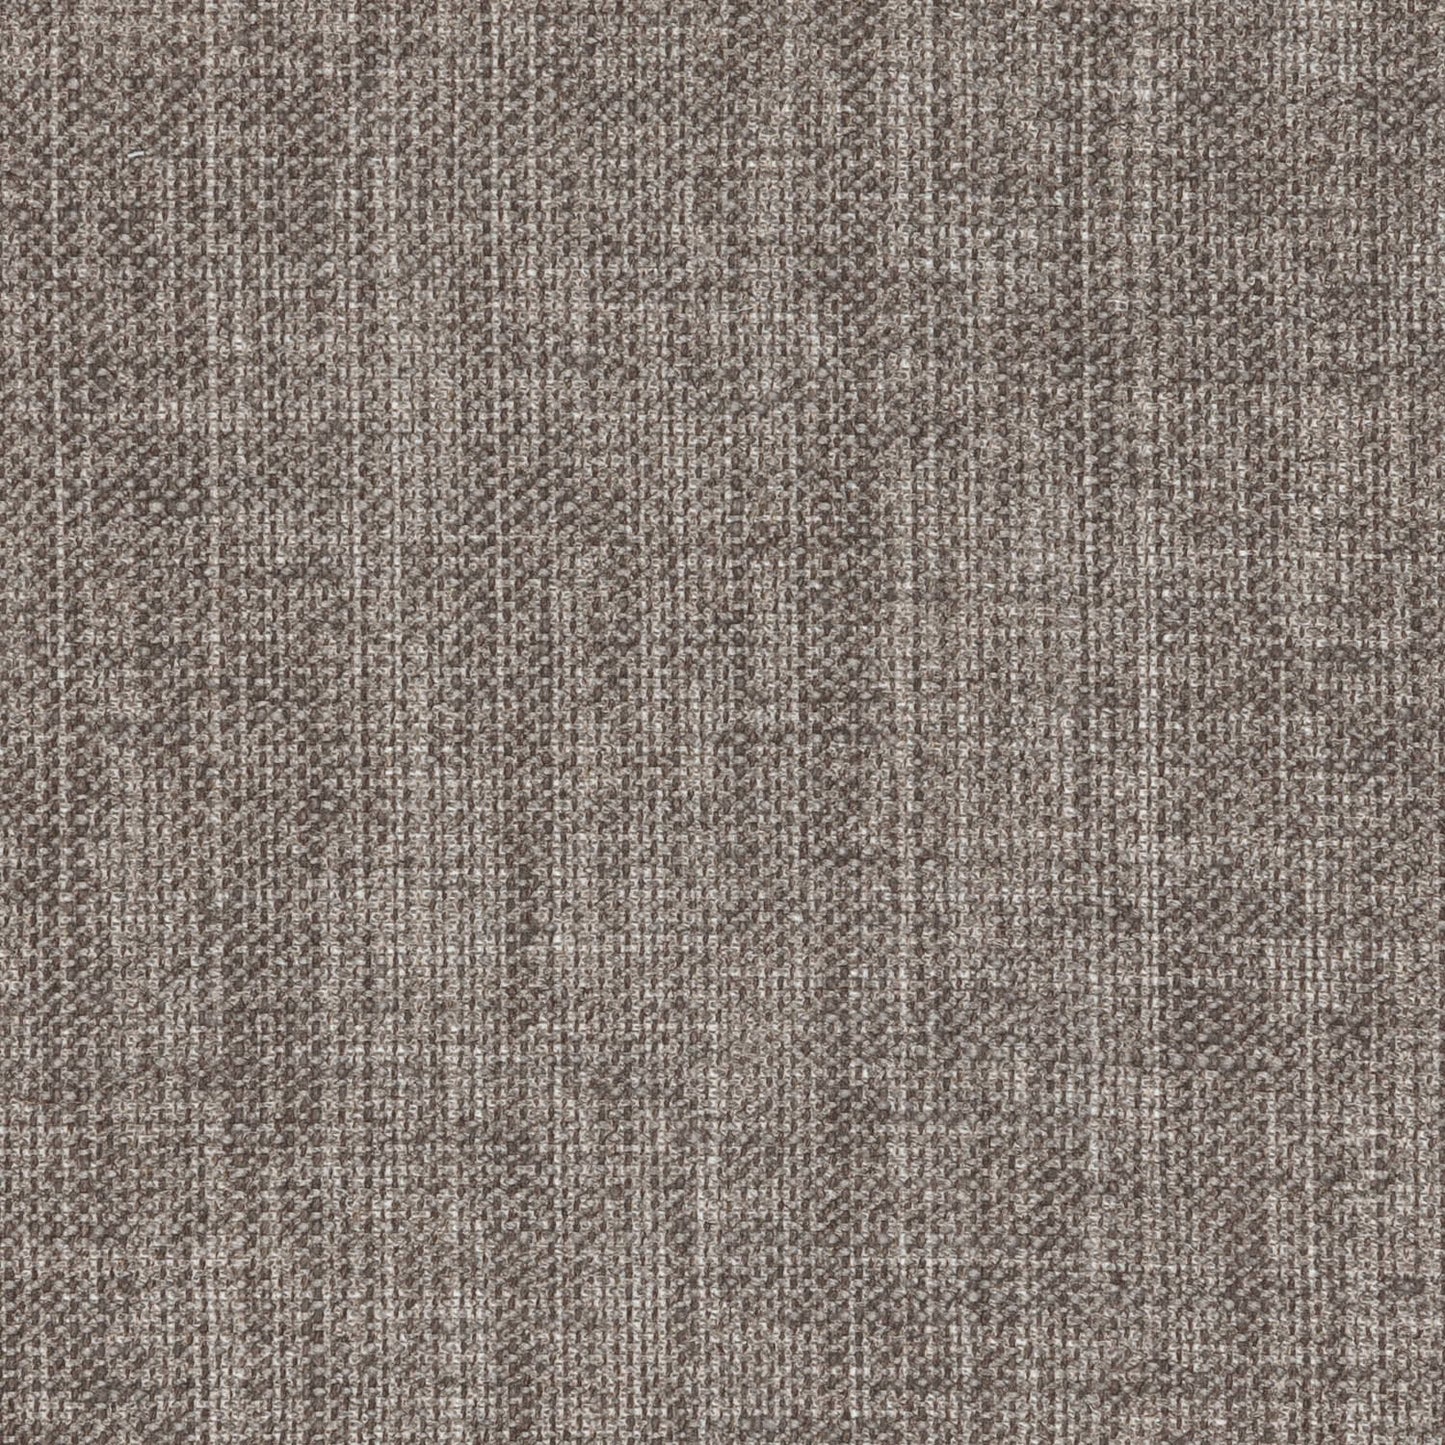 Plain Linen - N-044 Grey Matter